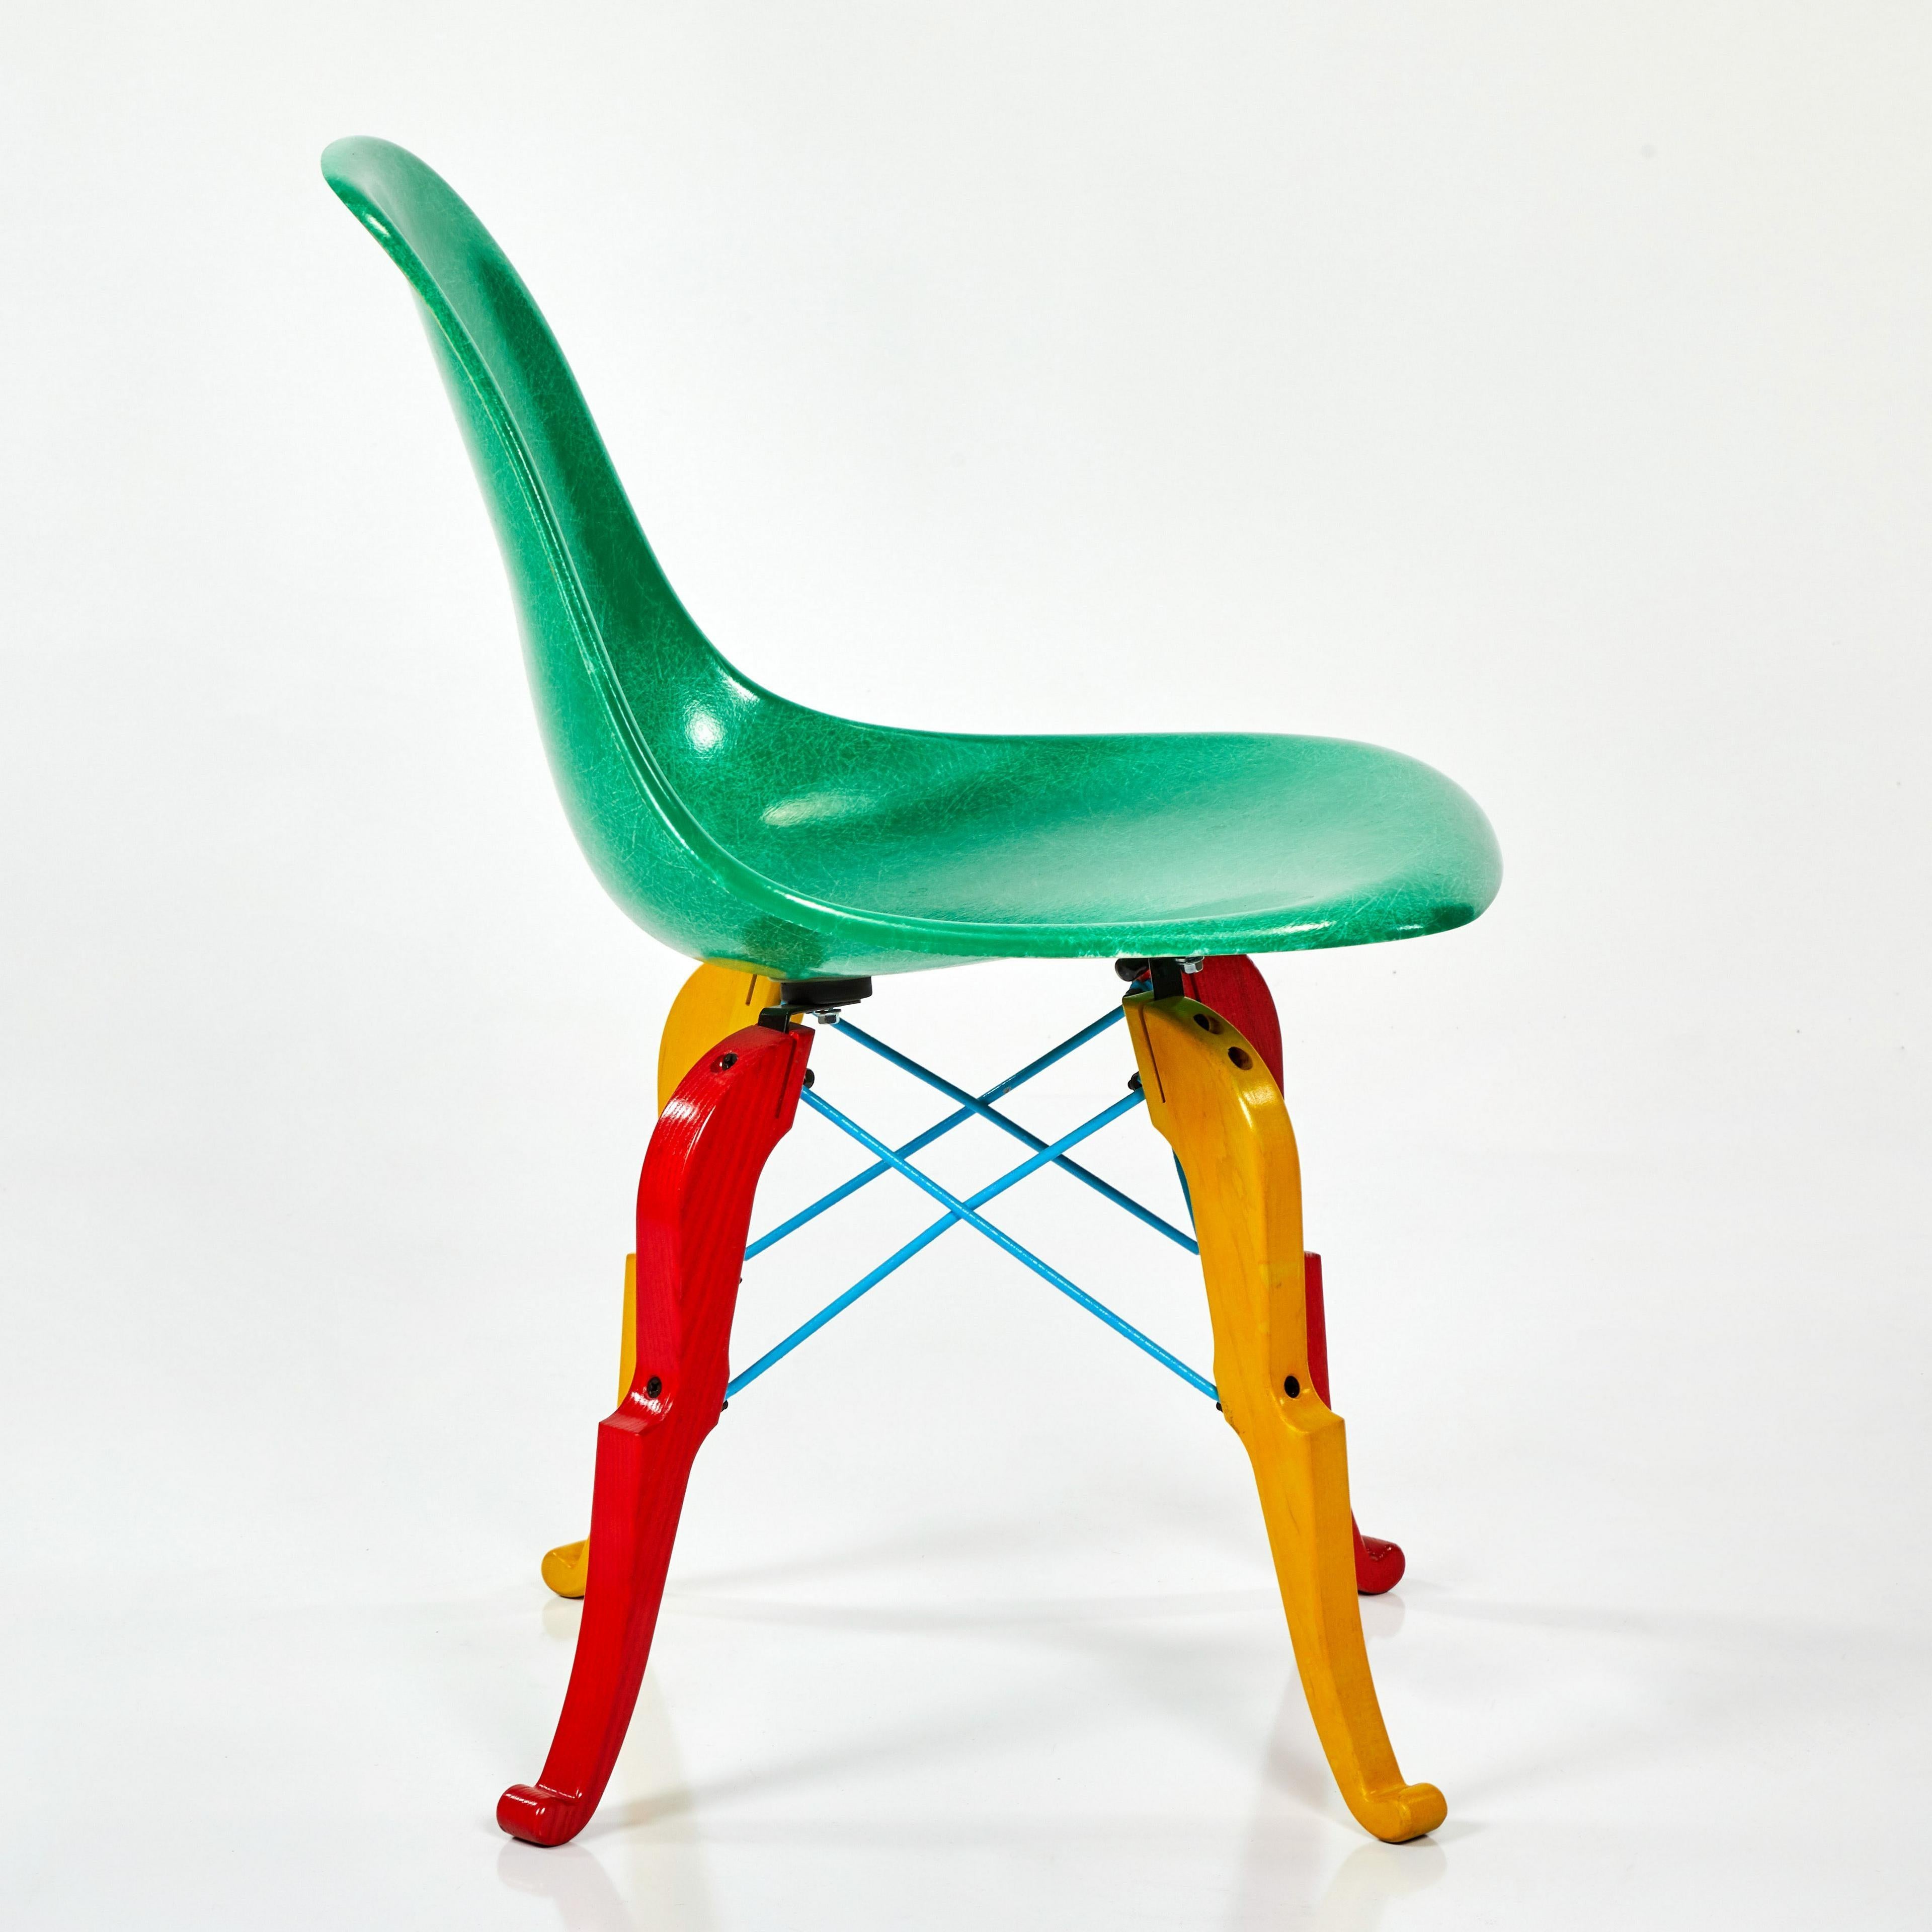 Une interprétation magnifique et unique d'une chaise d'appoint de style Eames produite par Modernica et conçue par Peter Shire. Produit en édition de 100 exemplaires, chacun est peint à la main par Shire ; siège en fibre de verre verte, base 'Prince